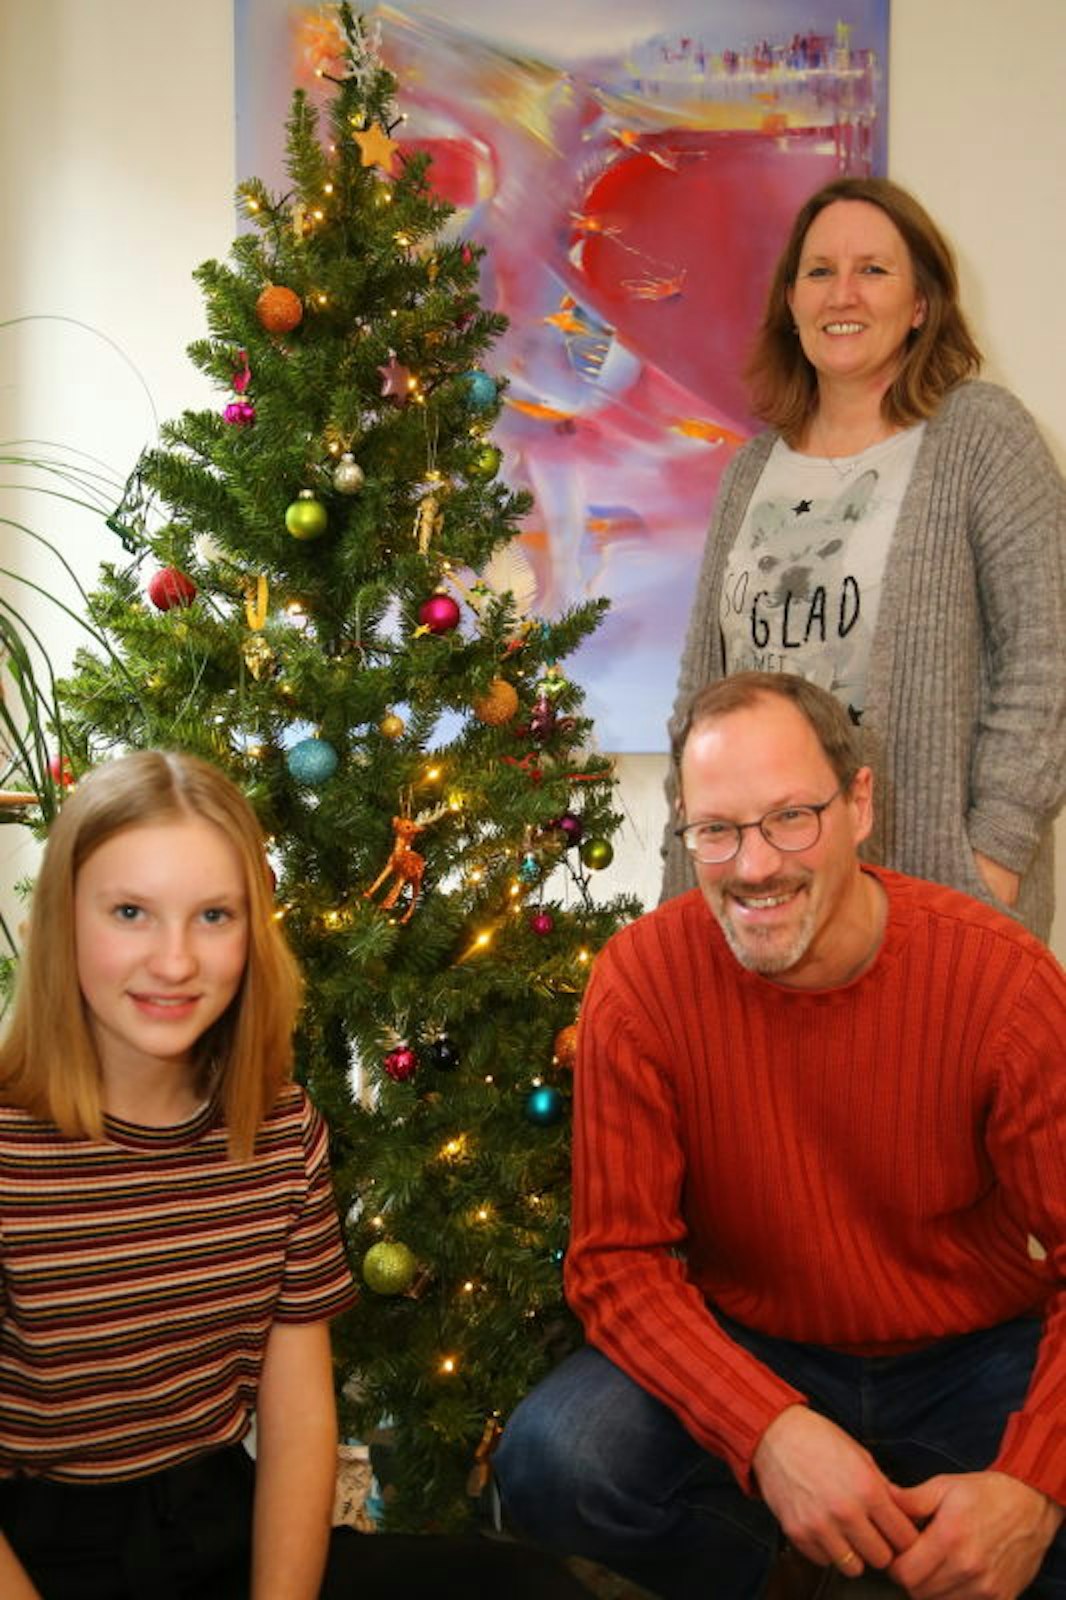 Veganes Essen ist bei Annette und Markus Schmitz-Bongard sowie Tochter Mia auch an Weihnachten angesagt.